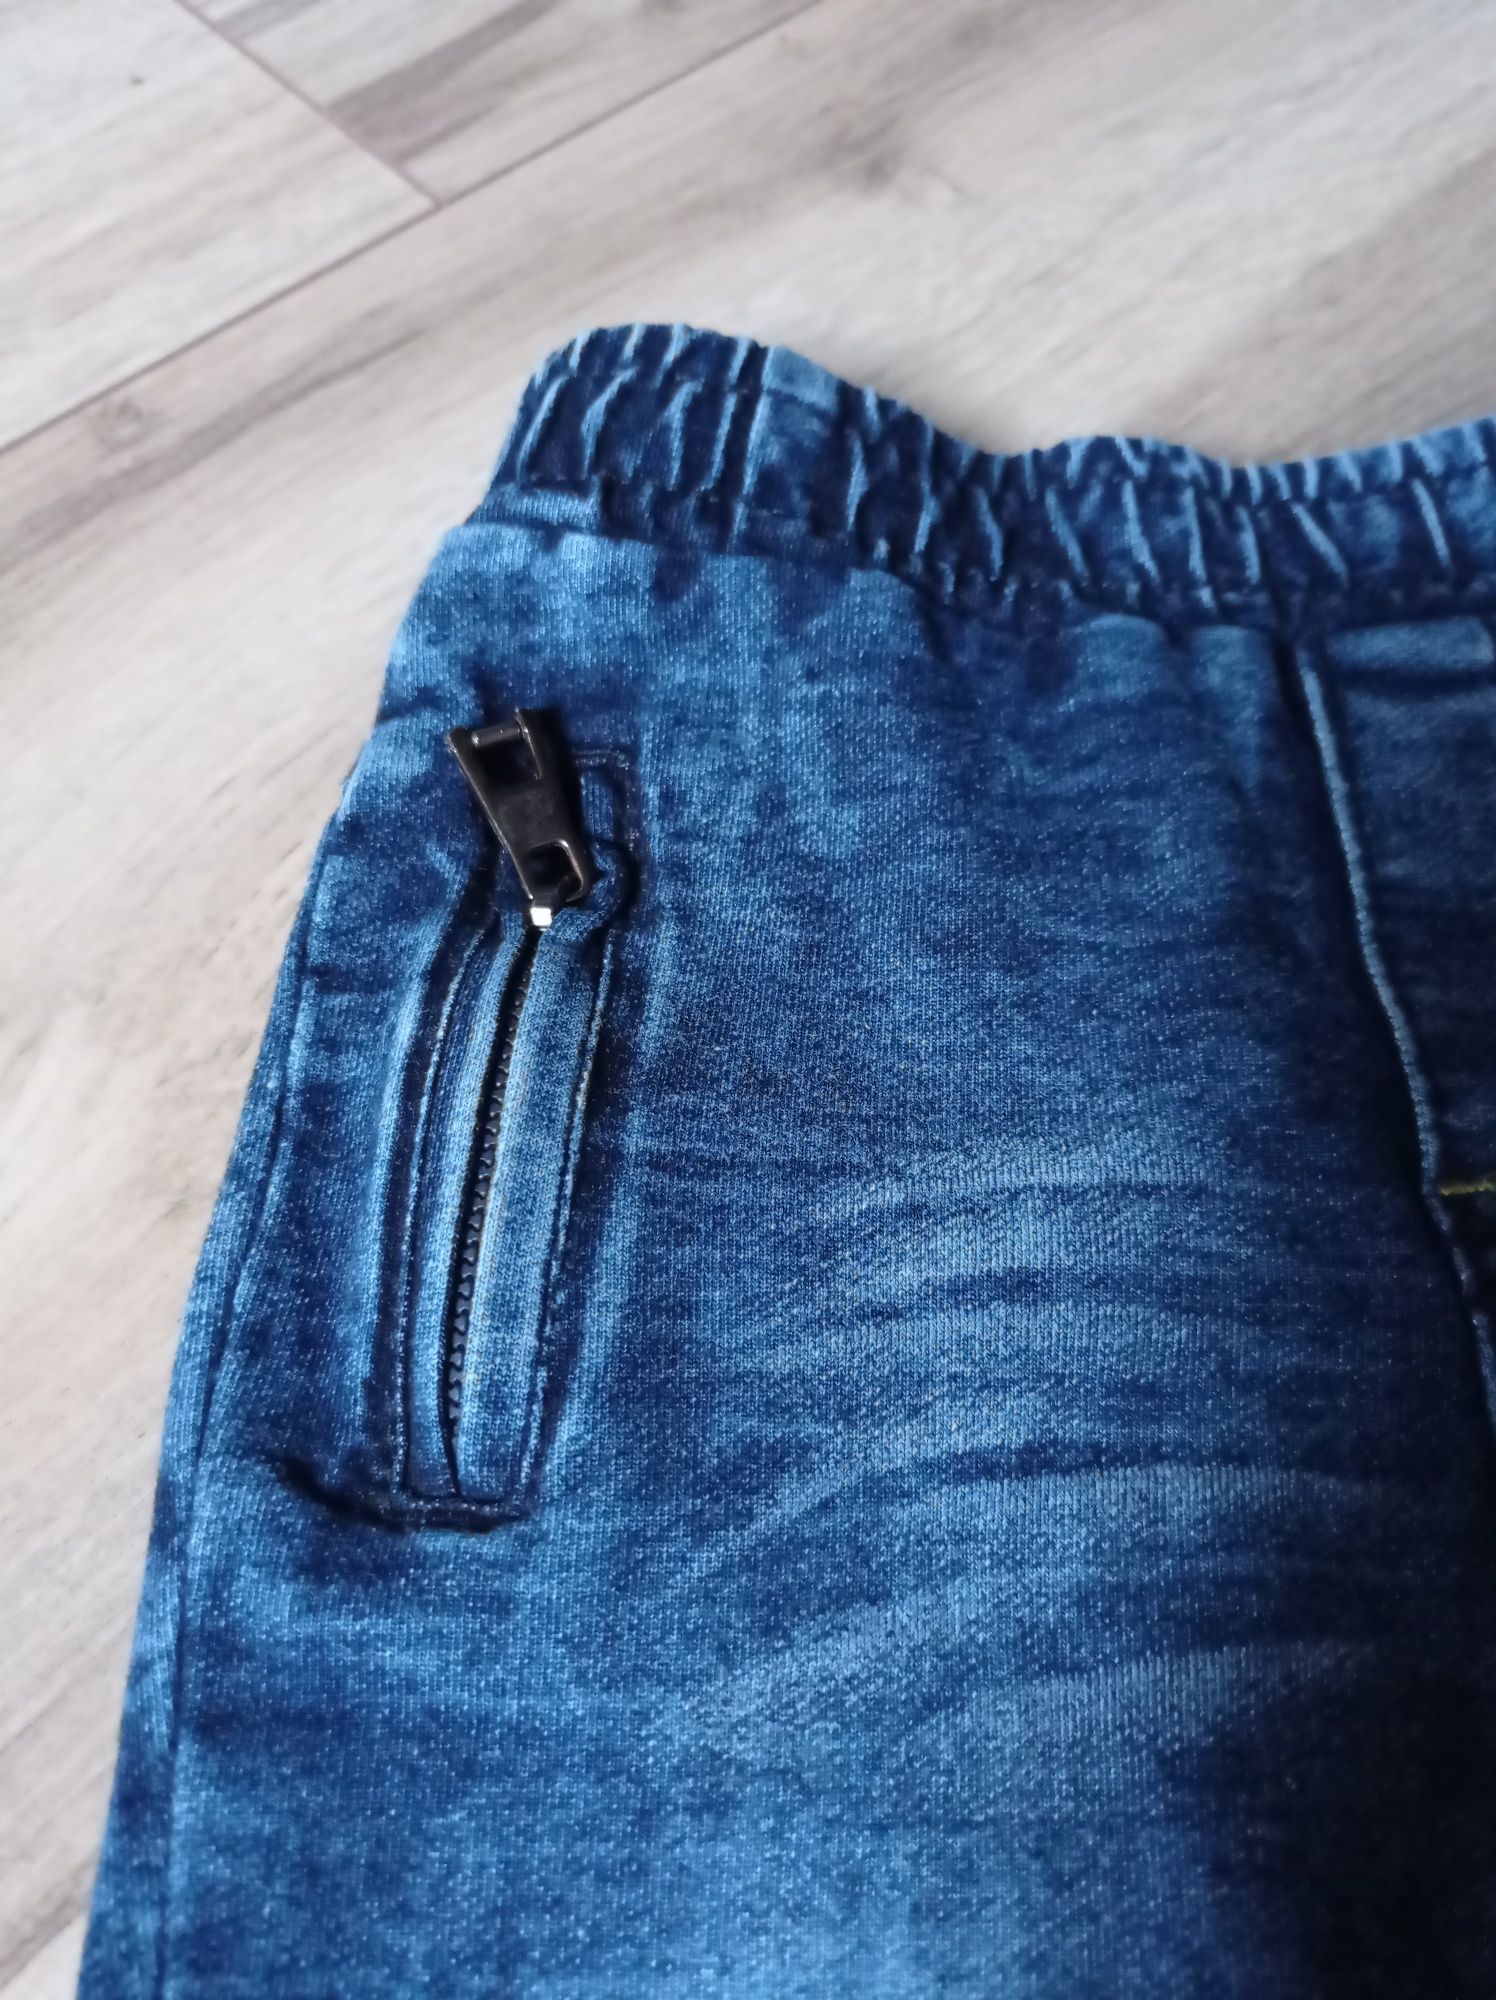 Piękne spodnie jeansowe 86 happy hause ozdobne zamki